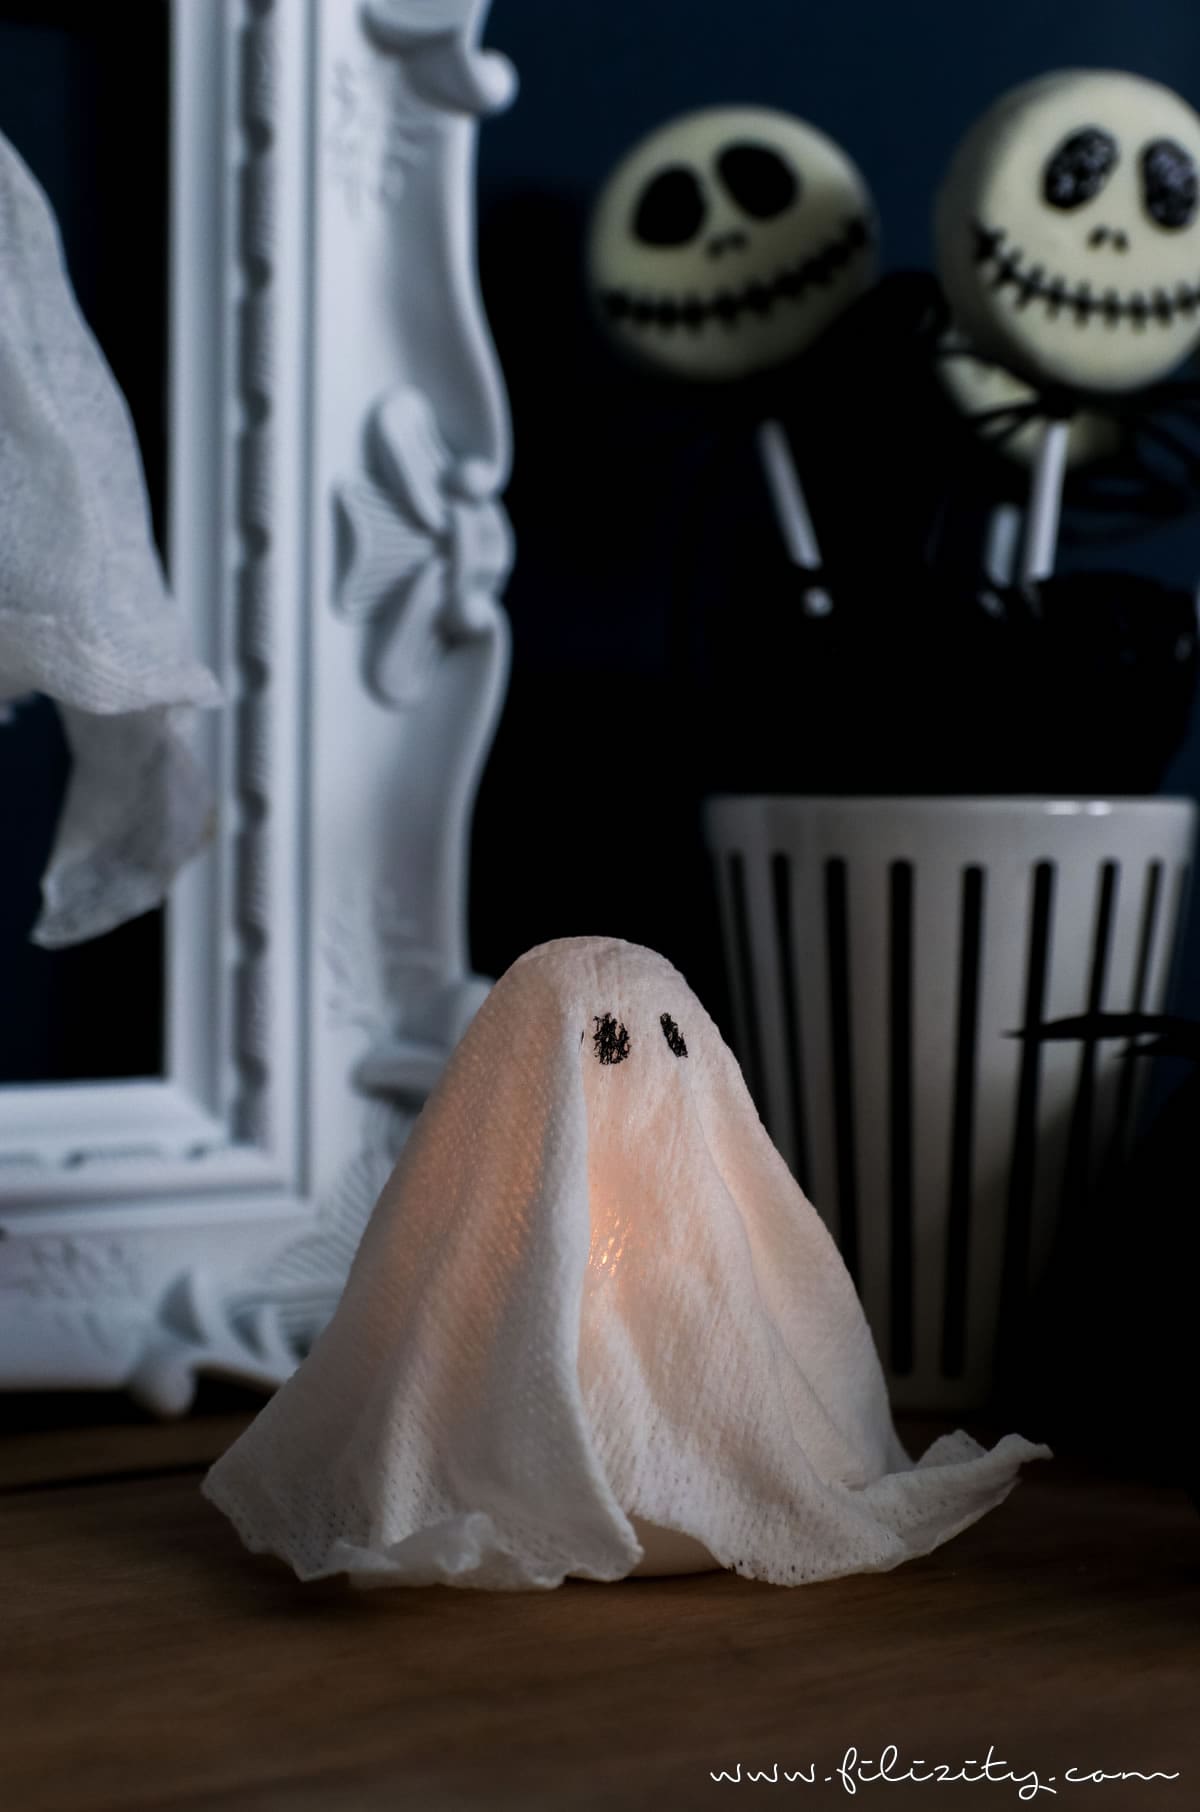 DIY Halloweendeko selber machen: Geister-Lampen und Geister-Anhänger ganz einfach ohne Sauerei basteln | Filizity.com | Food-Blog aus dem Rheinland #halloween #booh #geister